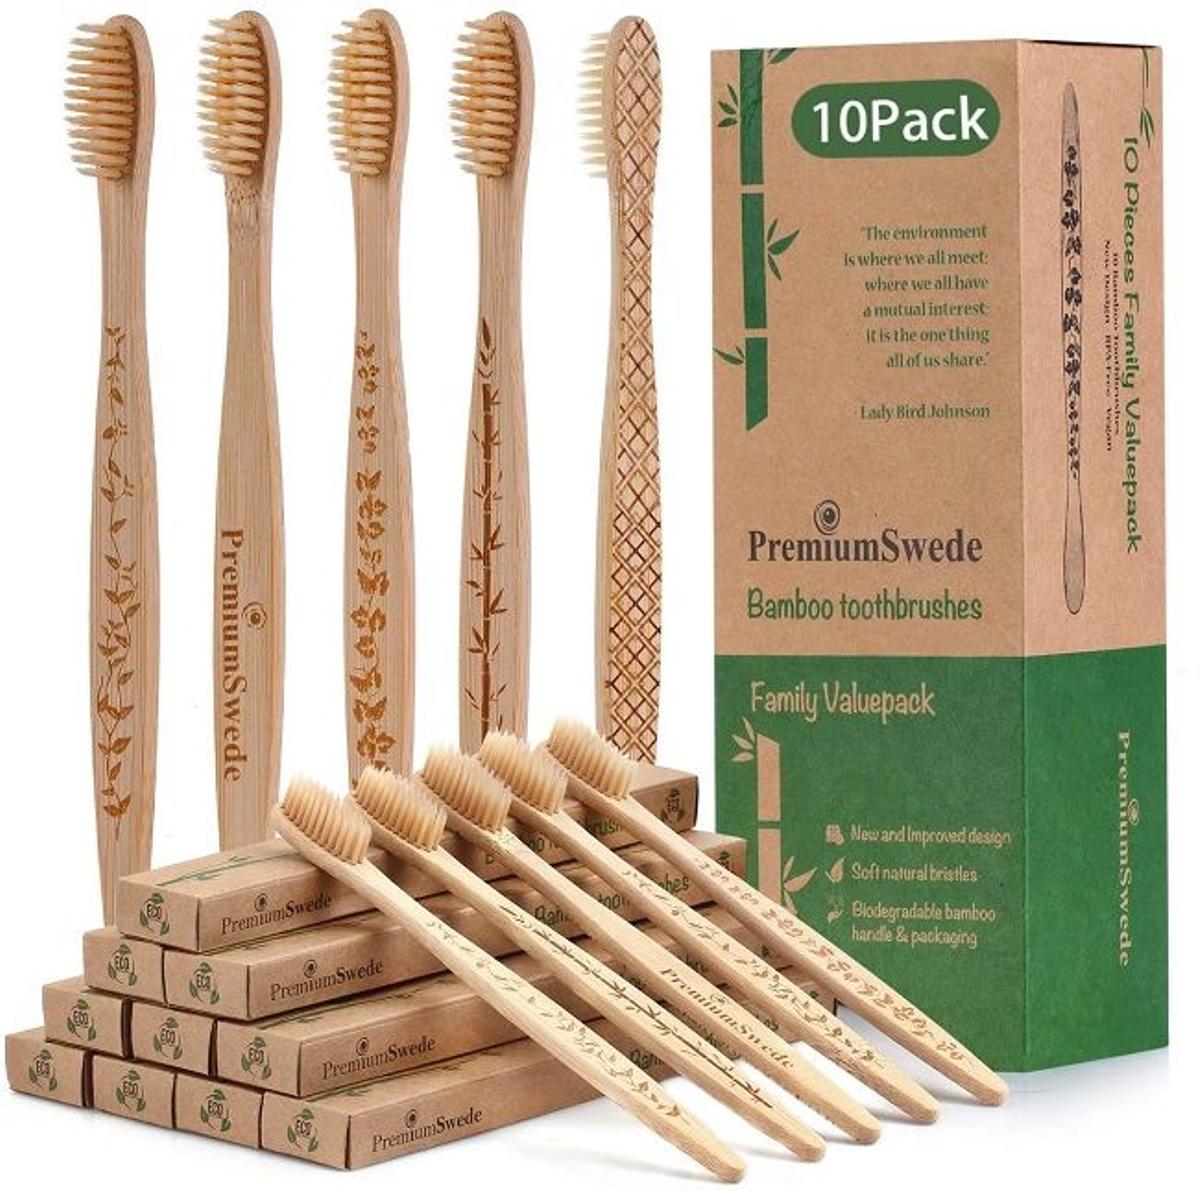 Cepillo de dientes de bambú, de Premium Swede